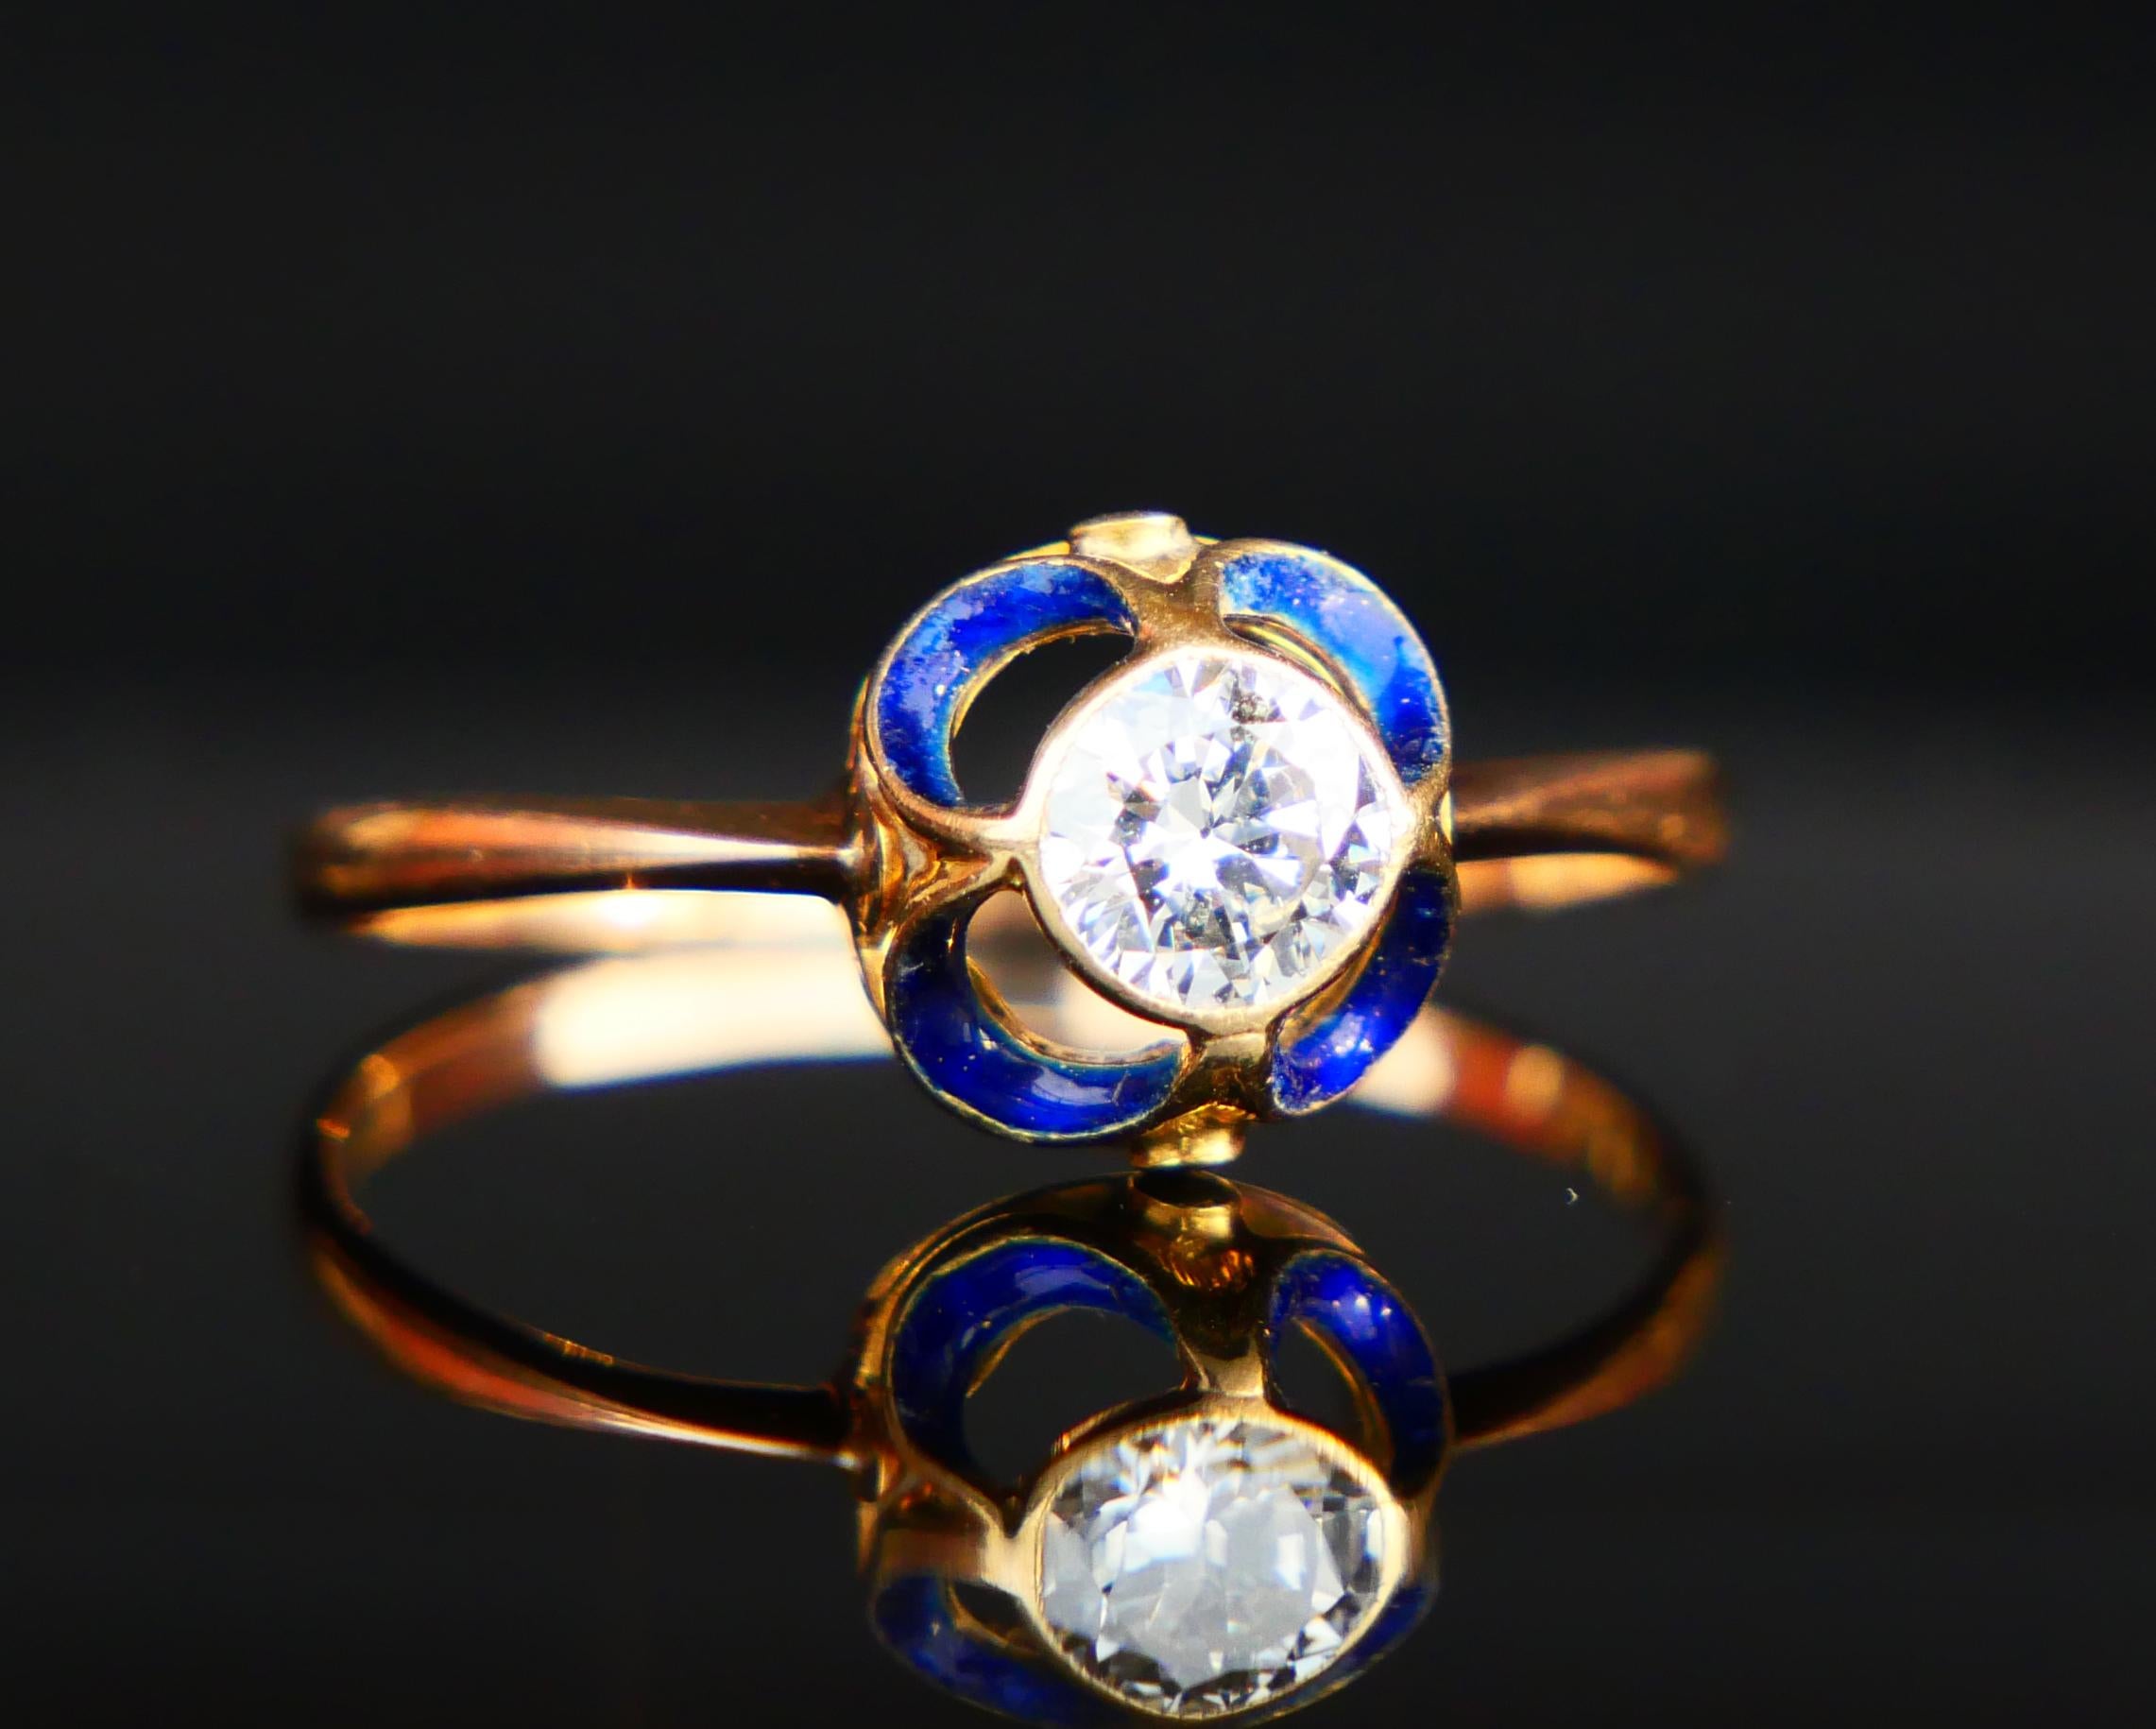 1904 Nordic Art Nouveau Ring 05ct. Diamond Blue Enamel 18K Gold ØUS9.5/2.5gr For Sale 5